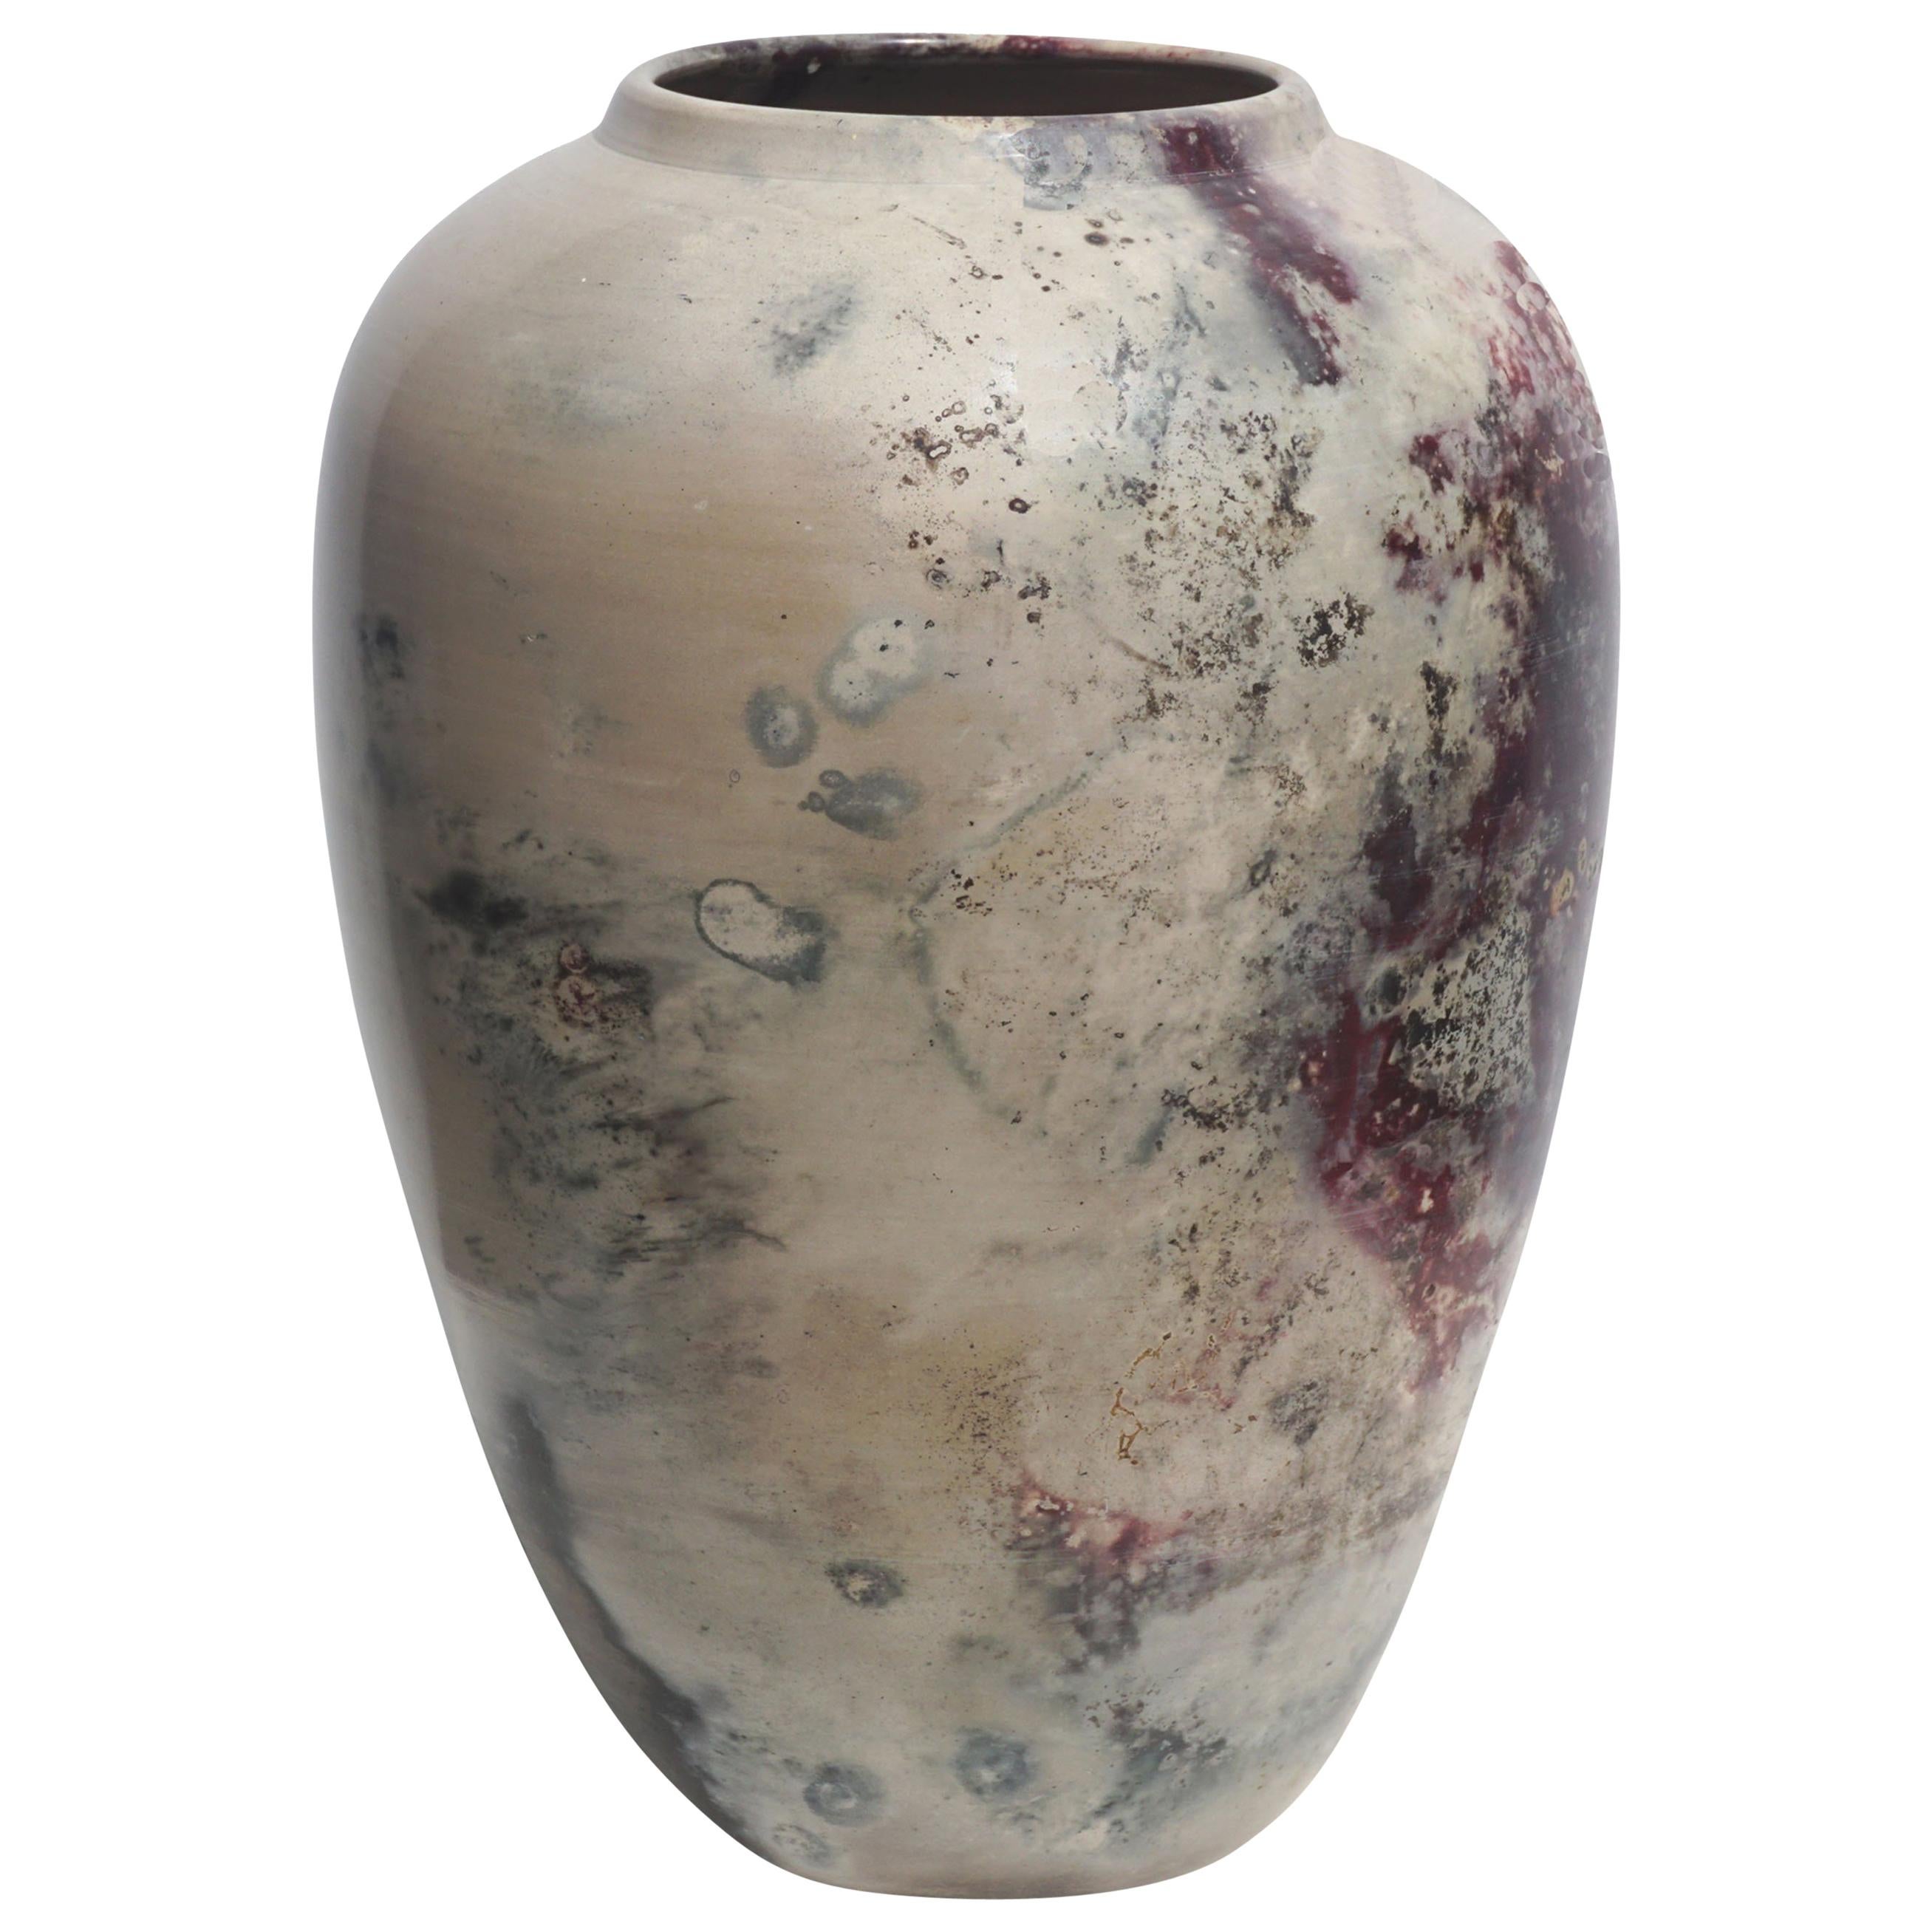 Large Raku Style Ceramic Vase by Joel Magen